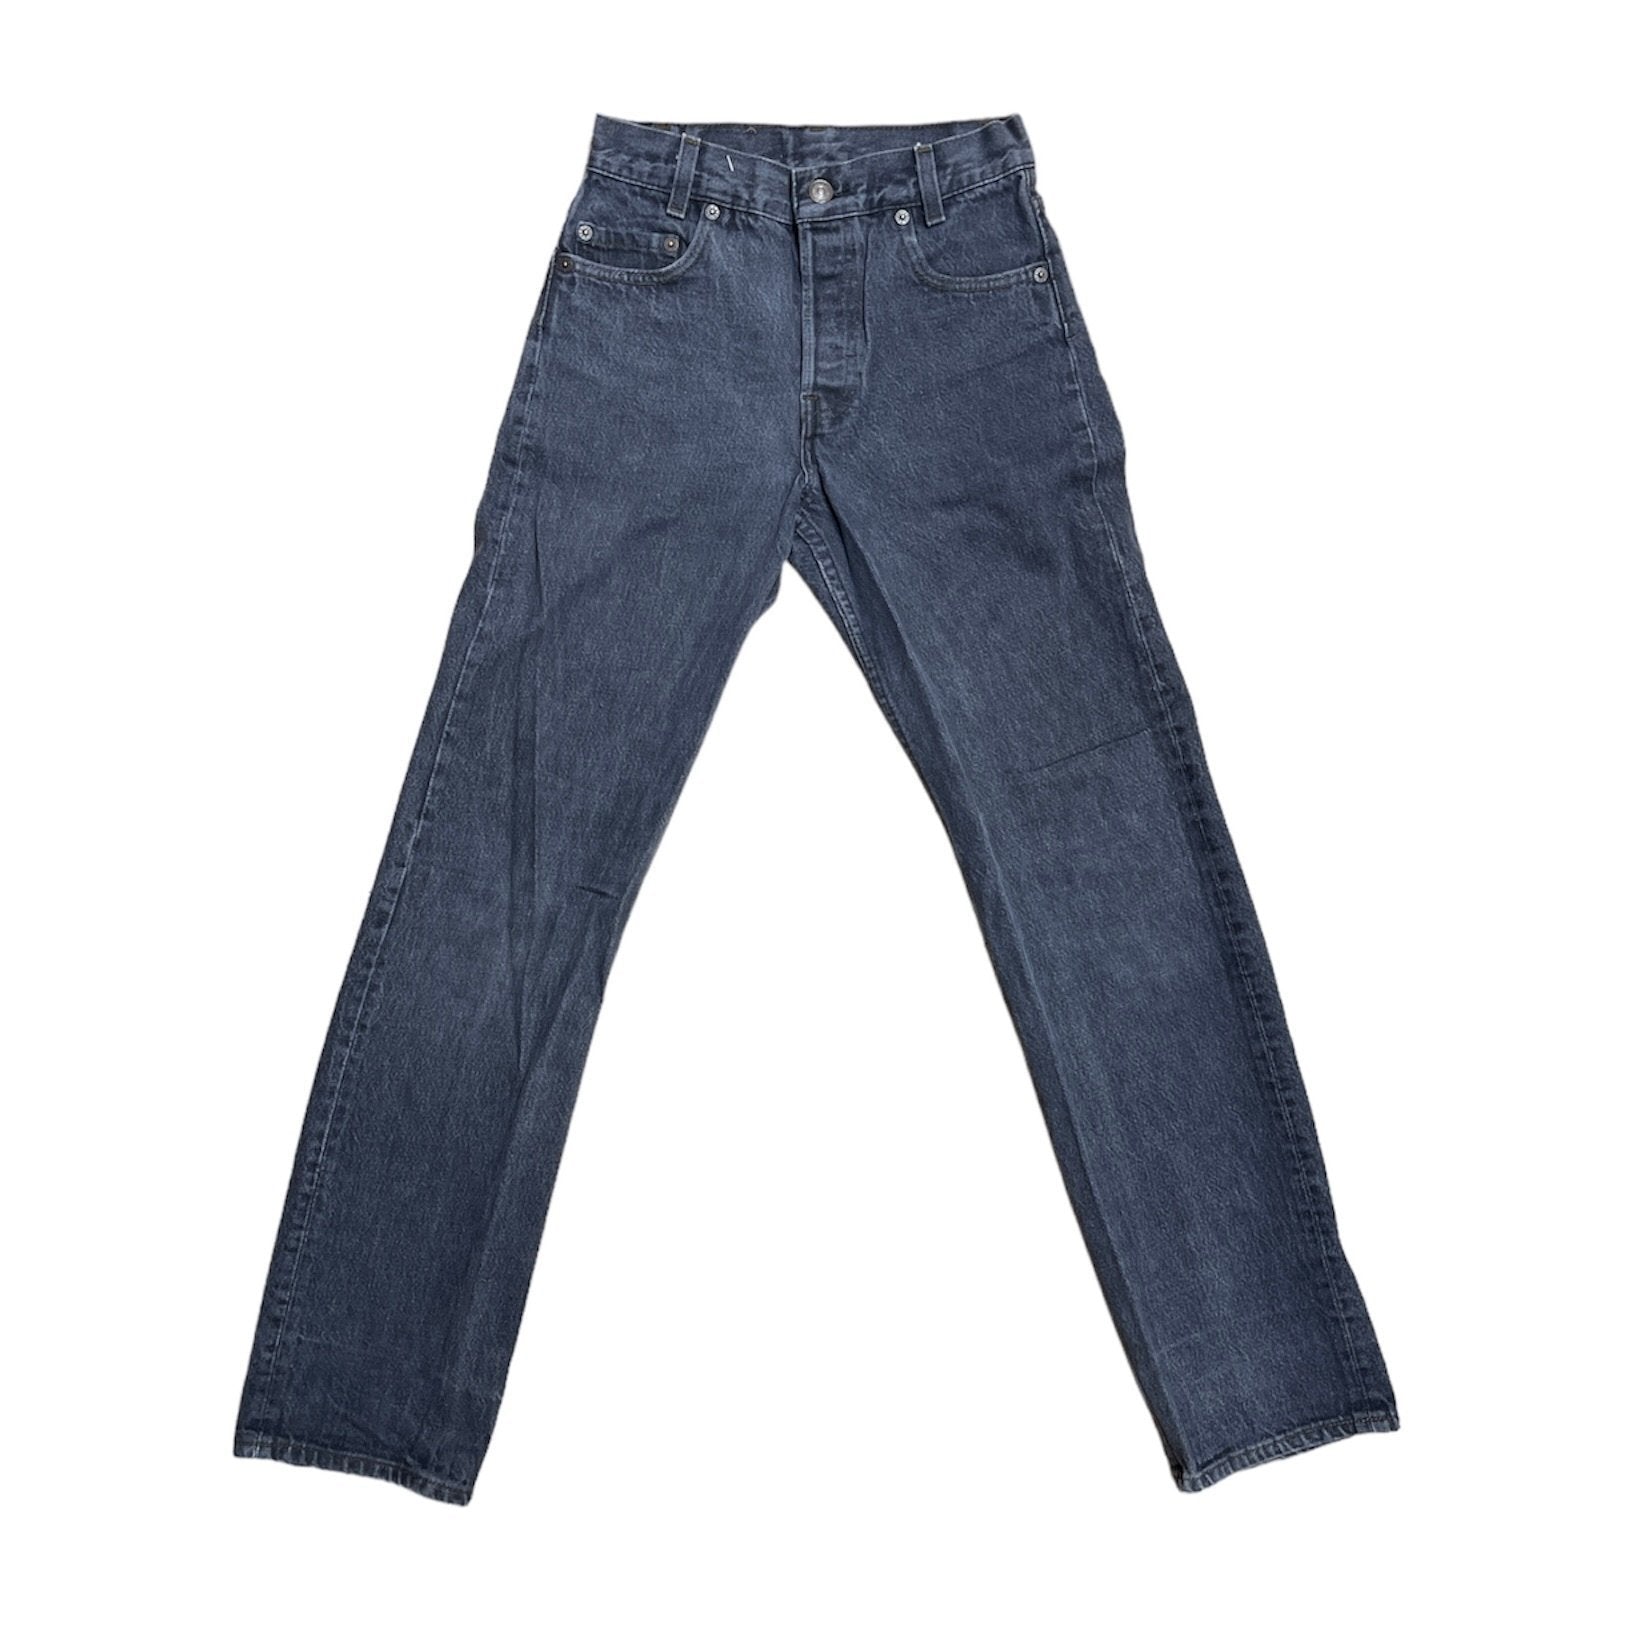 Vintage Levis 701 Black/Grey Jeans (W26/L30)